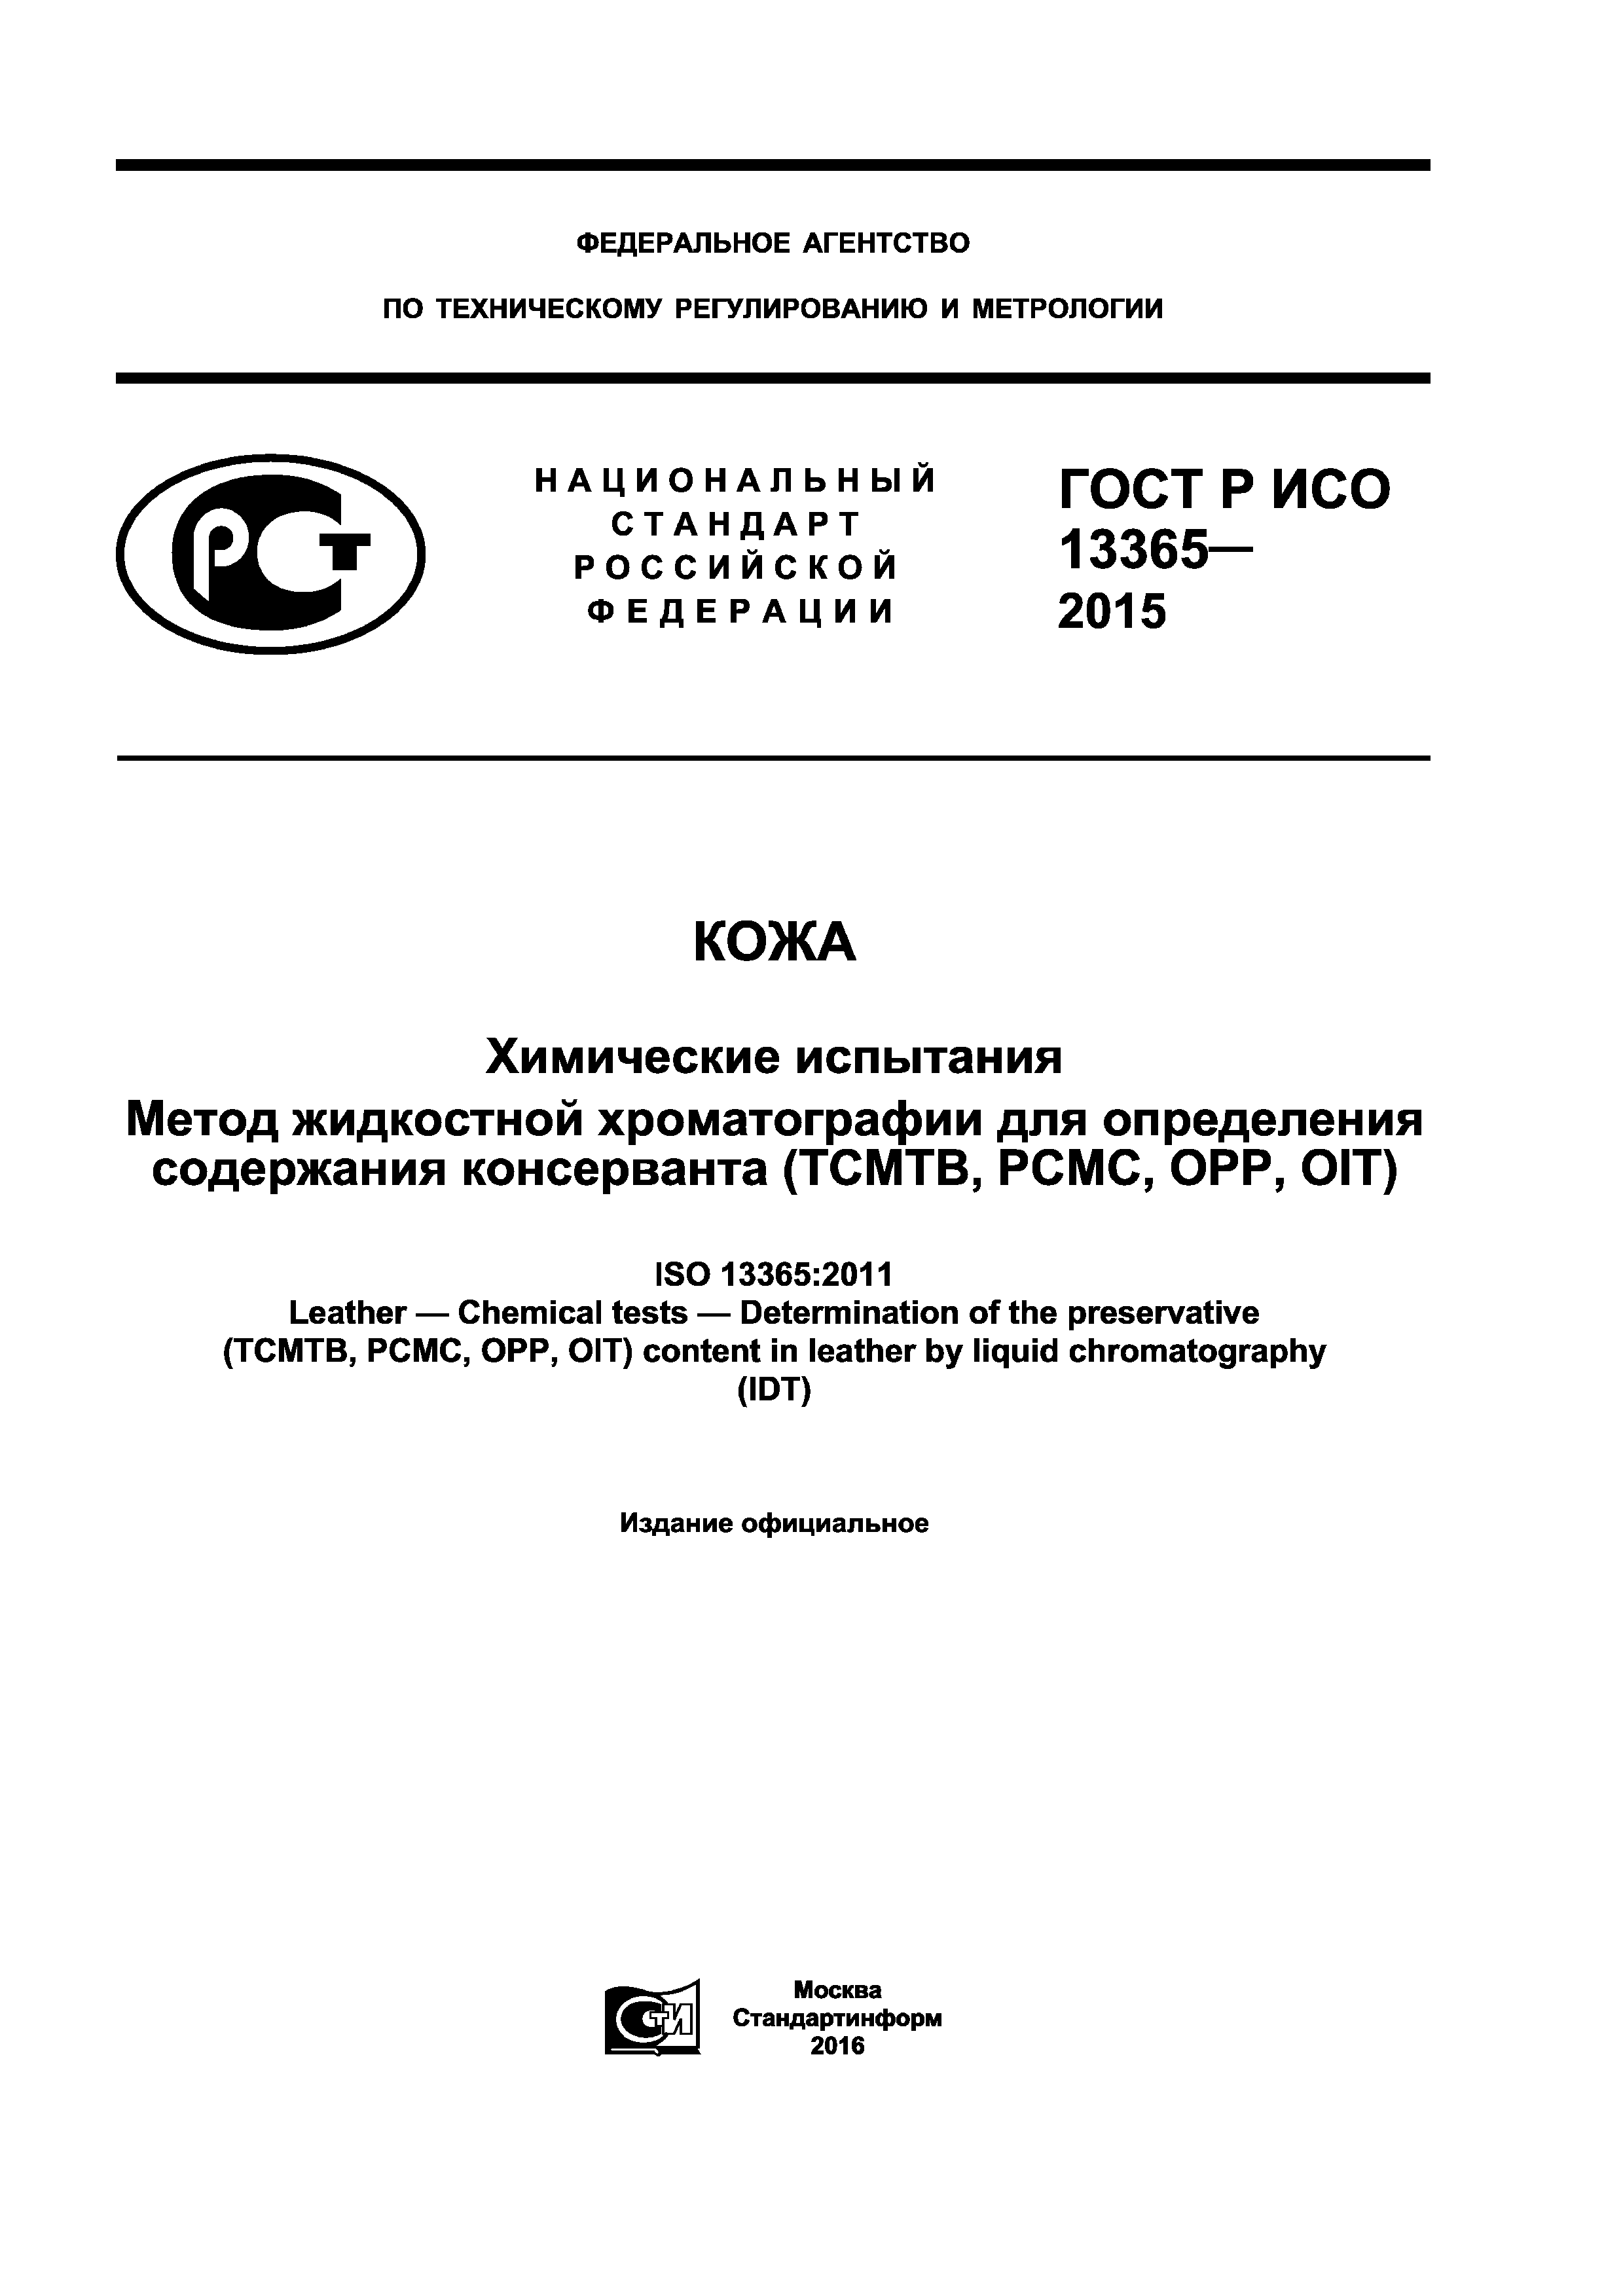 ГОСТ Р ИСО 13365-2015